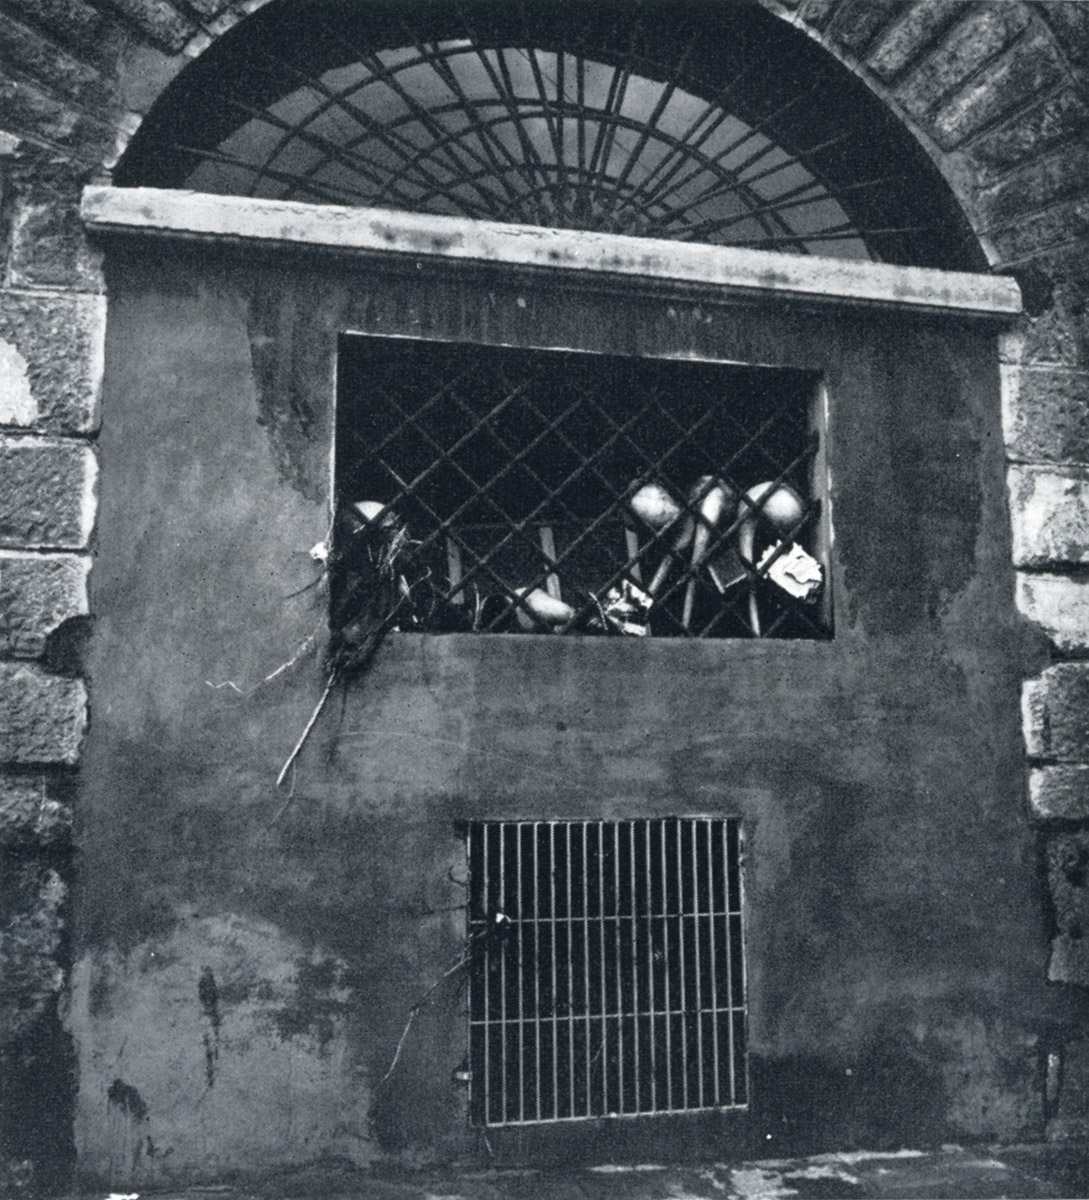 Storte incastrate nelle inferriata di una finestra del Museo, dopo il ritiro delle acque dell'Arno